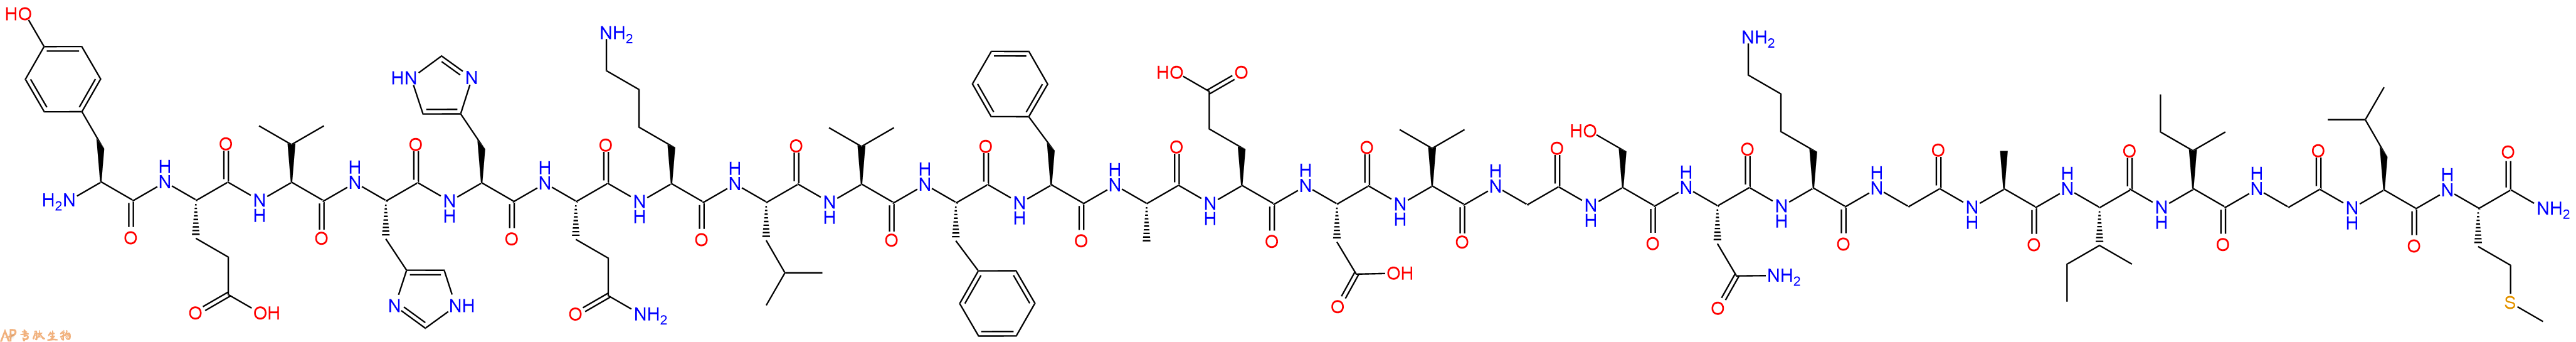 专肽生物产品淀粉肽β-Amyloid(10-35), amide181427-66-7